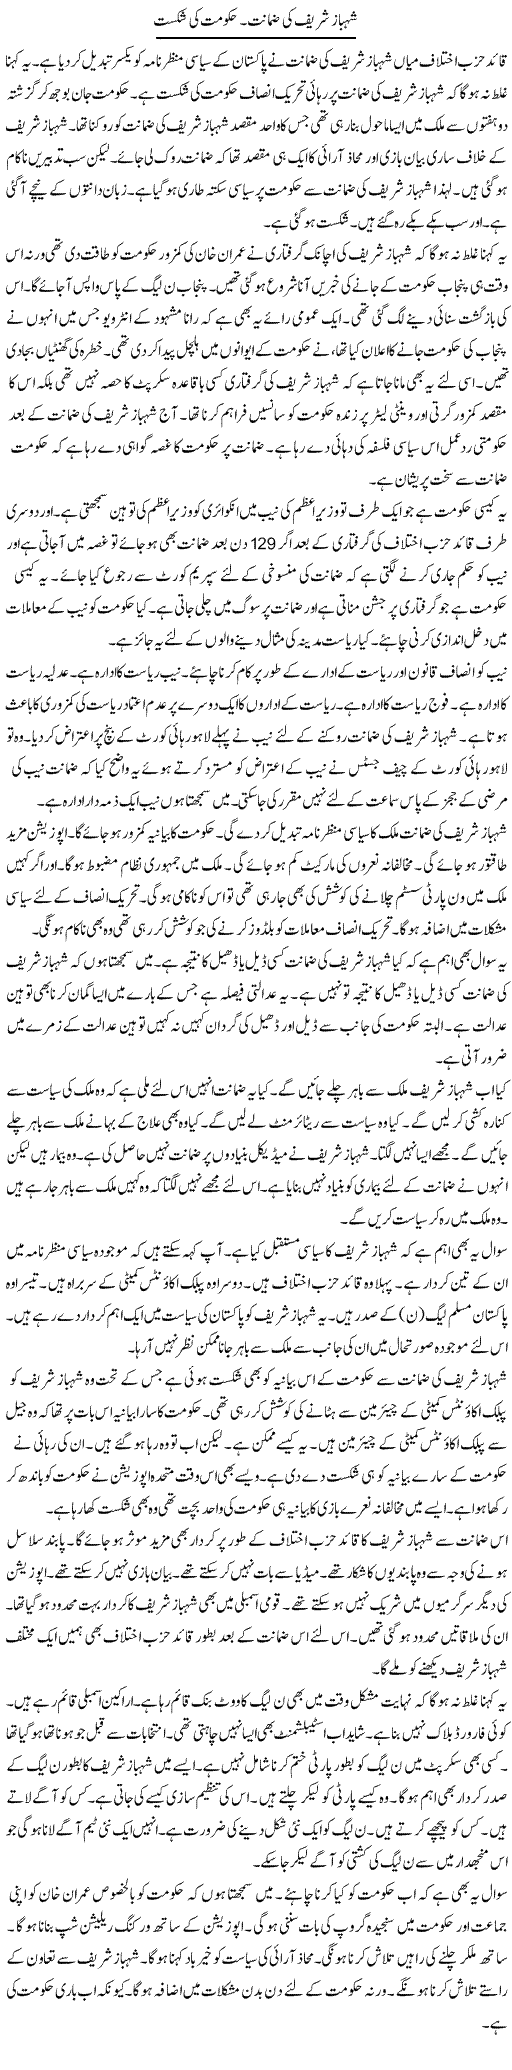 Shahbaz Sharif Ki Zamanat, Hukumat Ki Shikast | Muzamal Suharwardy | Daily Urdu Columns